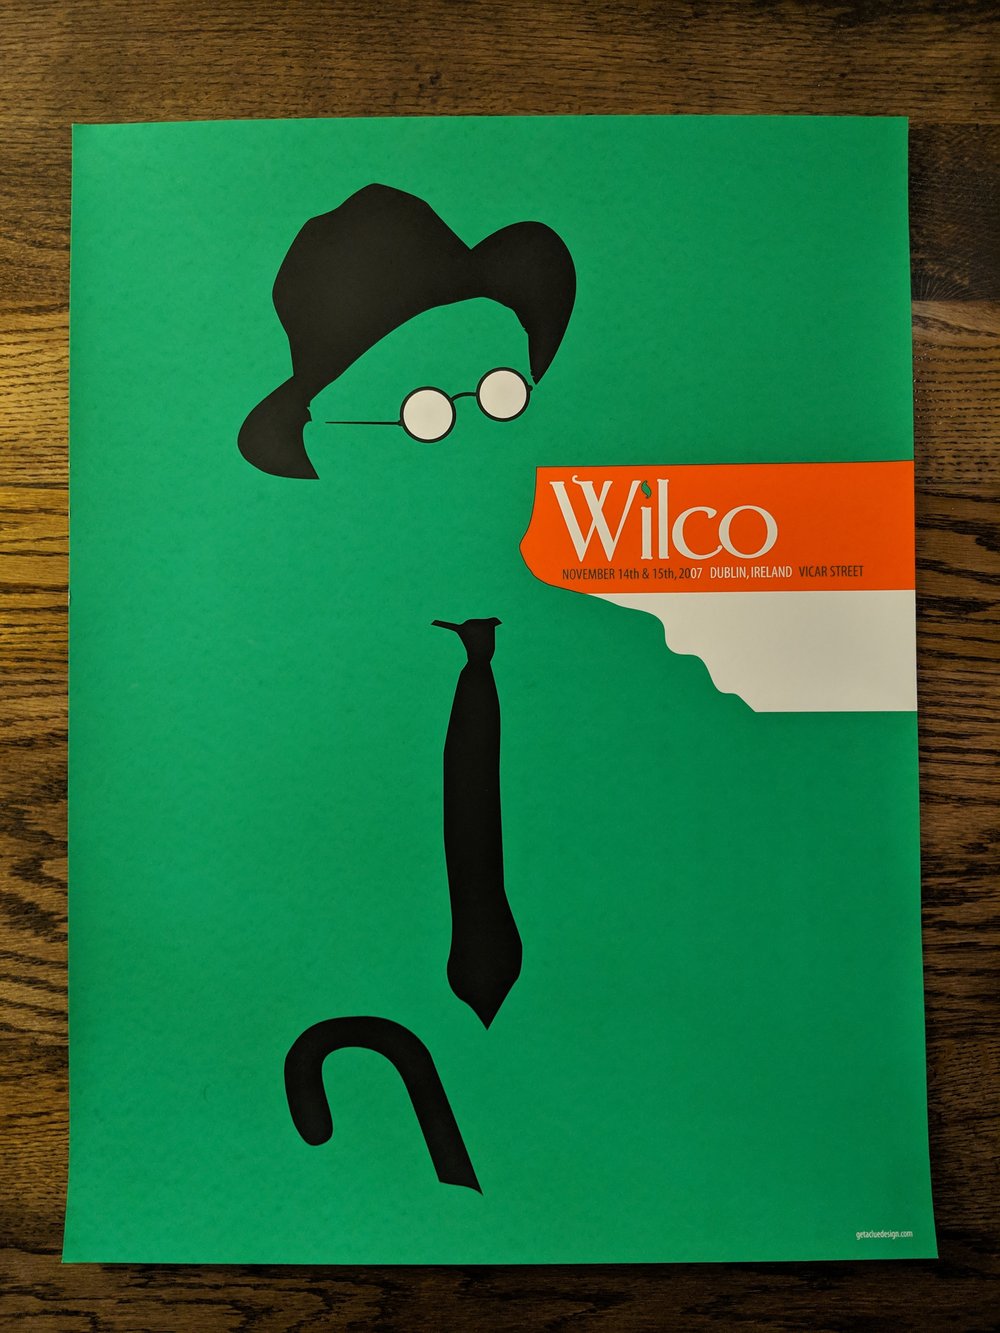 Wilco, Dublin, Ireland. **RARE**